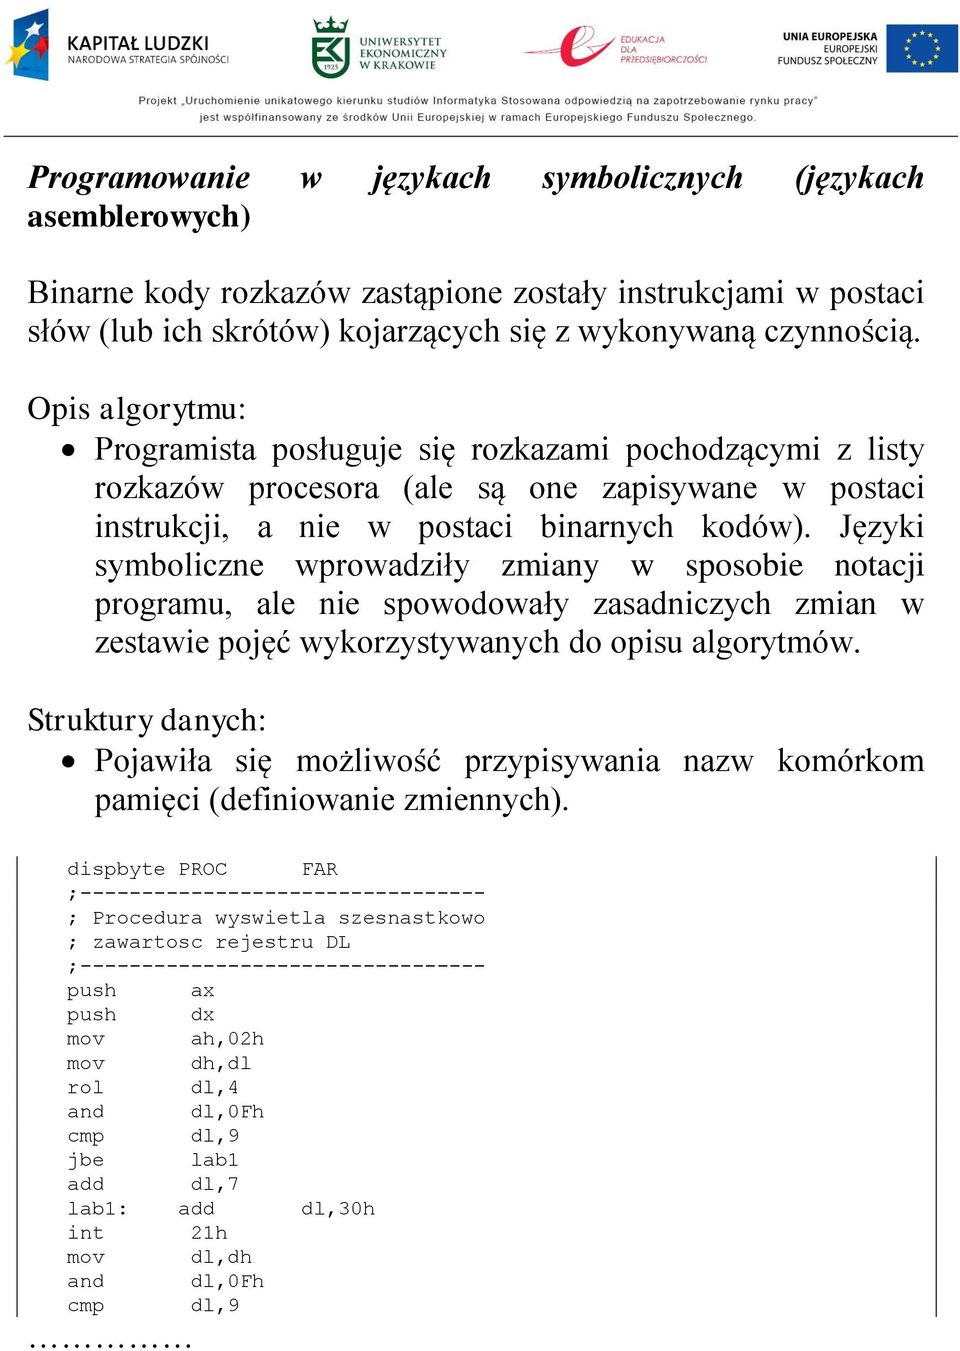 Języki symboliczne wprowadziły zmiany w sposobie notacji programu, ale nie spowodowały zasadniczych zmian w zestawie pojęć wykorzystywanych do opisu algorytmów.